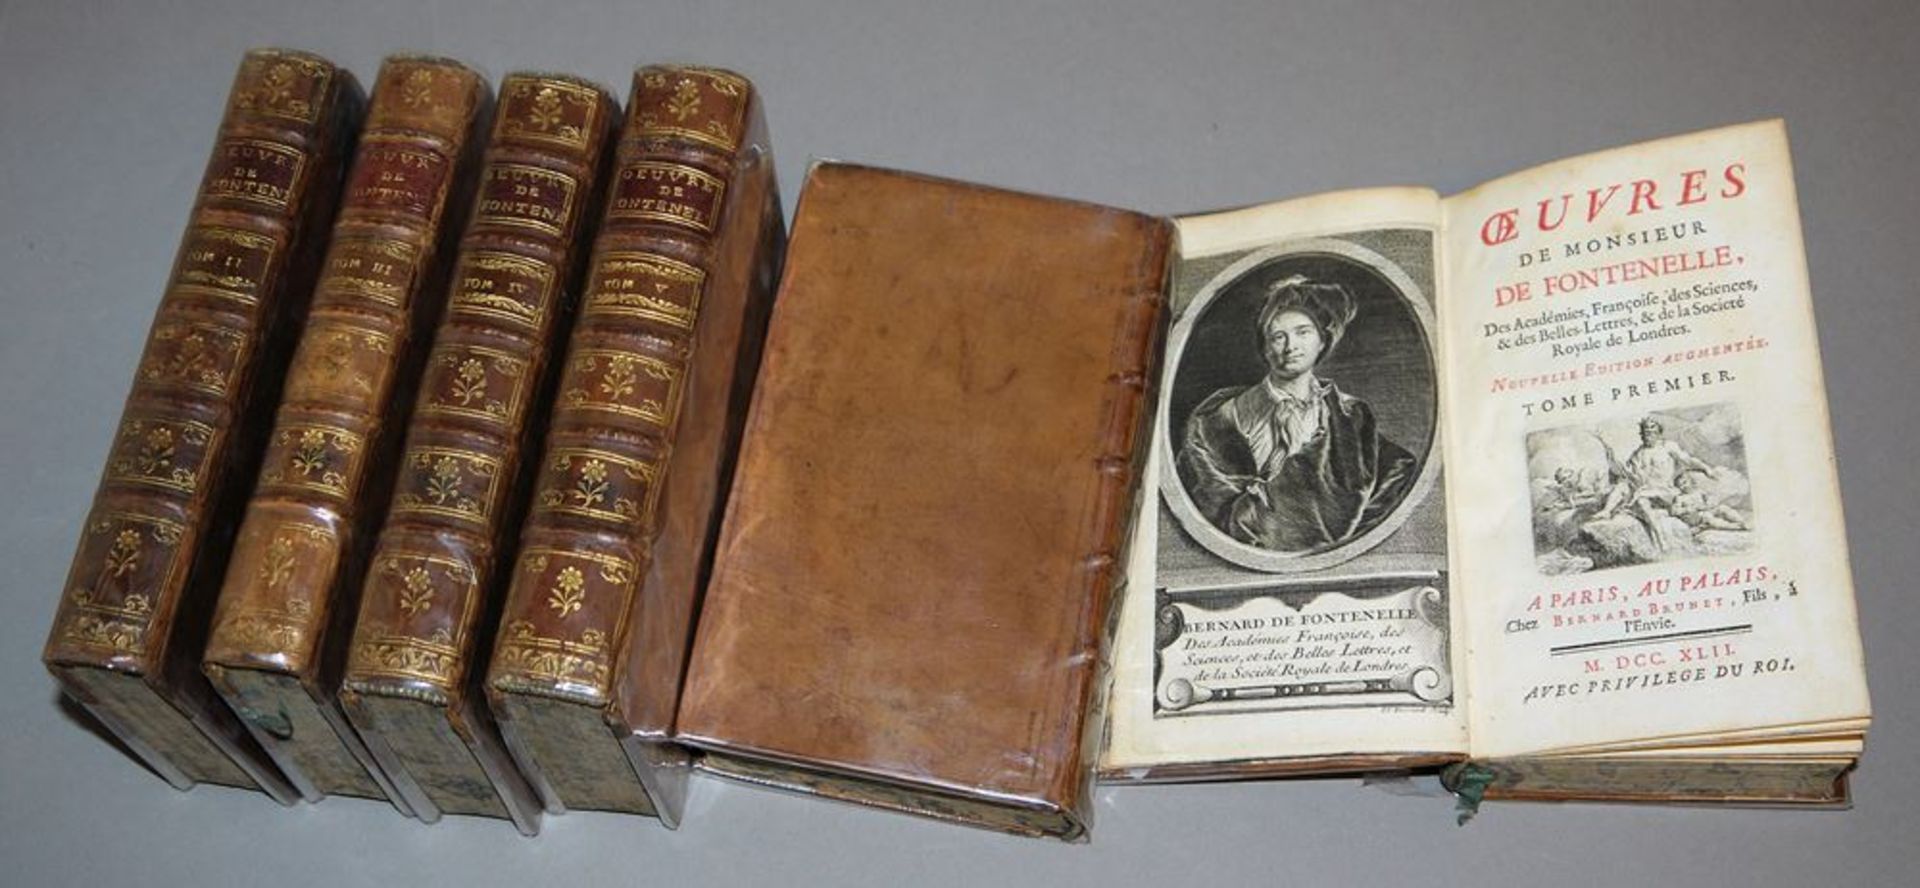 Sechs Bände Werke von Fontenelles, 1742